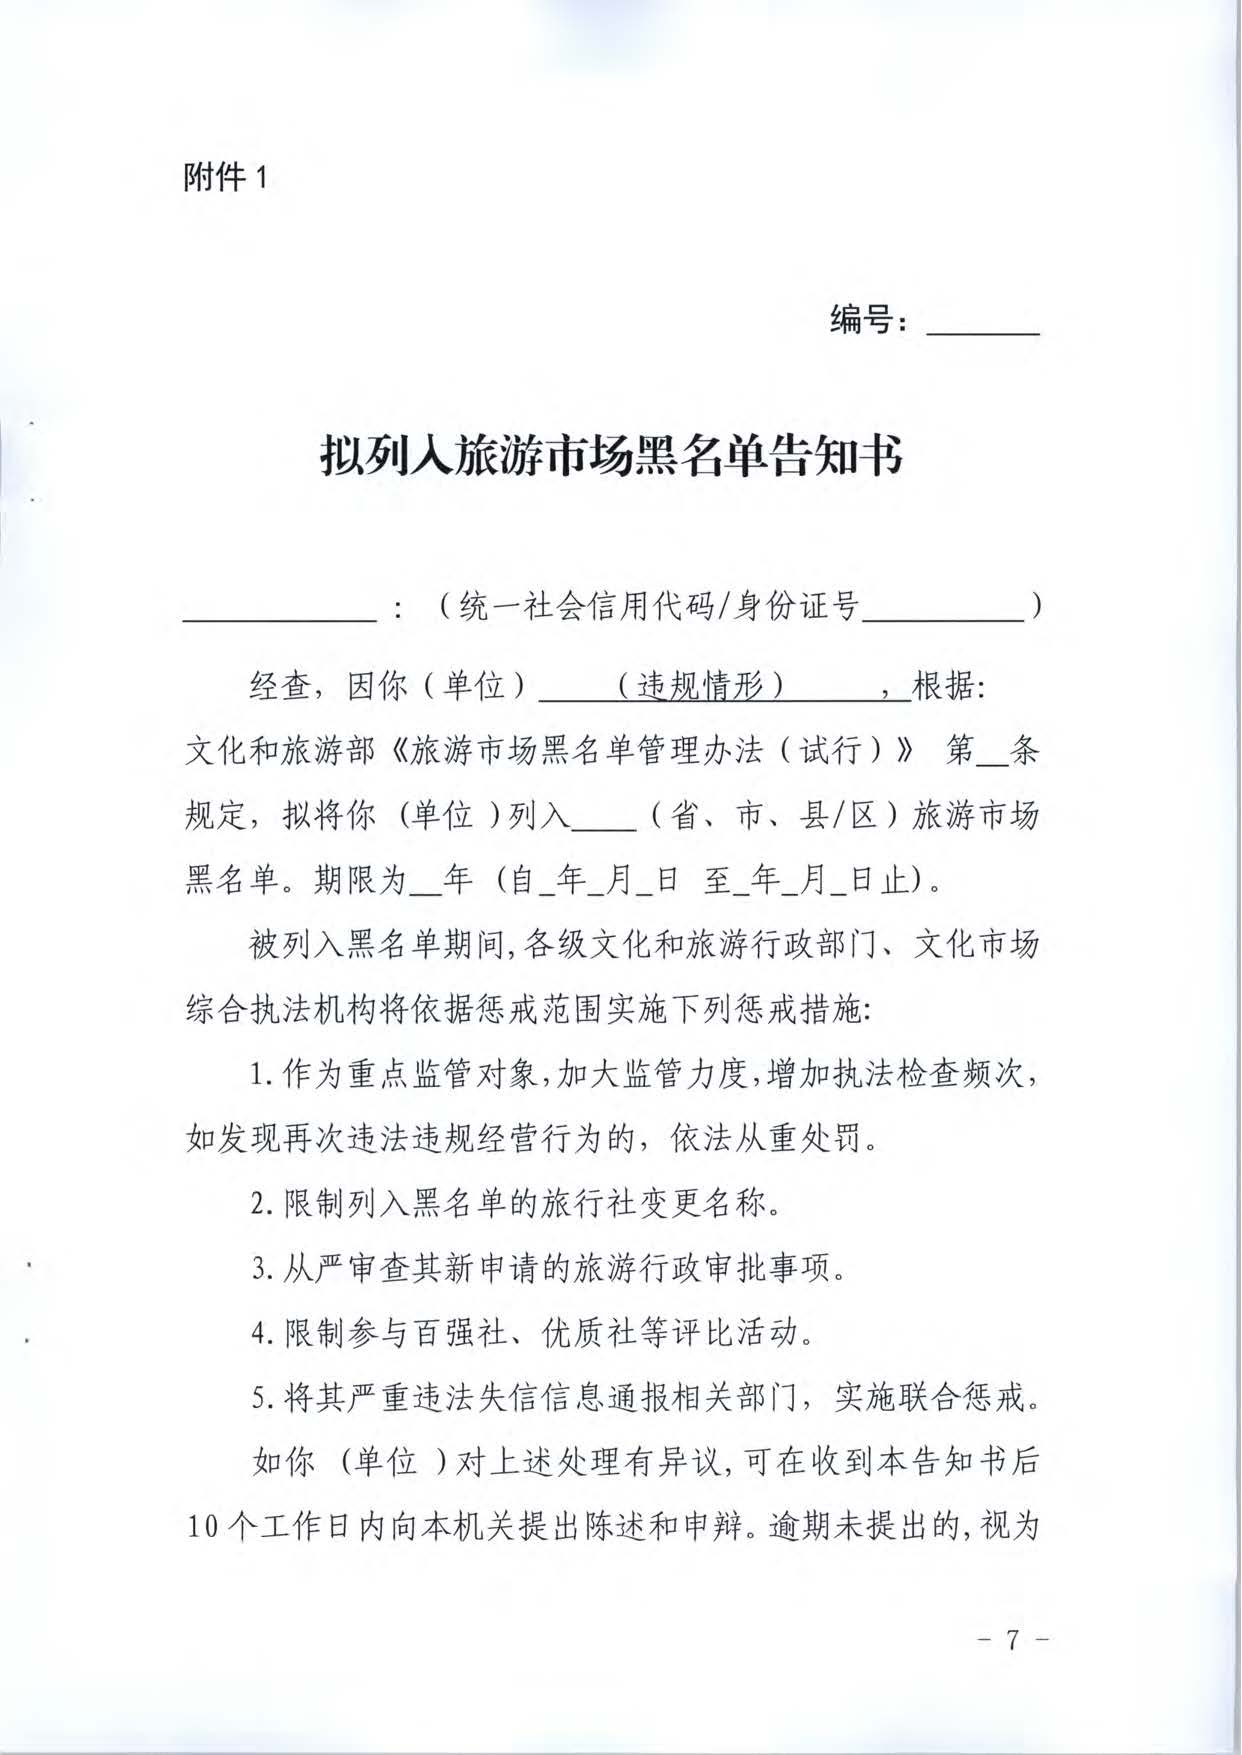 广东省文化和旅游厅关于推进文化和旅游市场信用修复工作的通知_页面_26.jpg